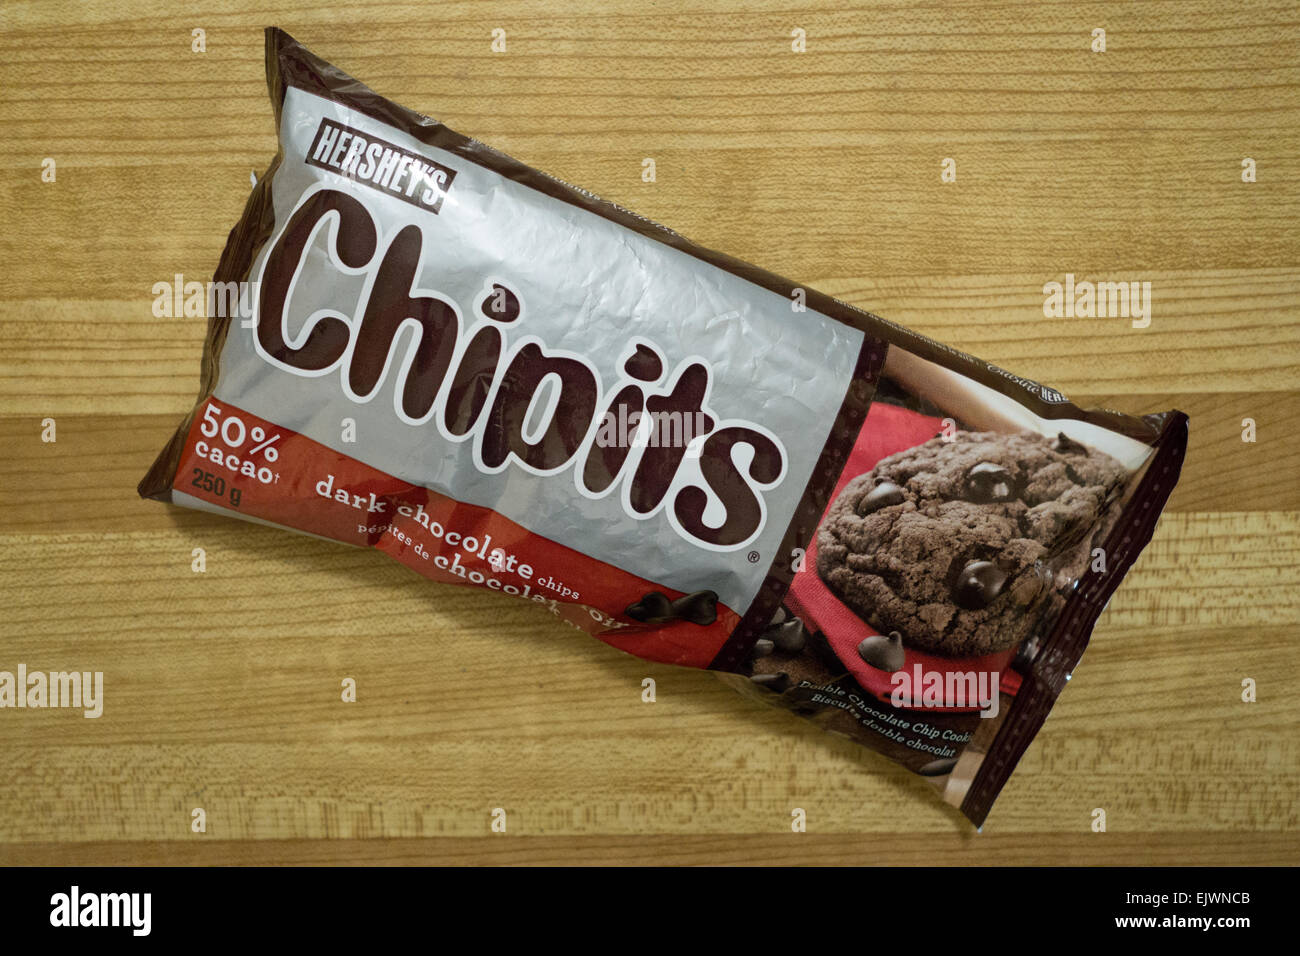 hershey chipits chocolate chips Stock Photo